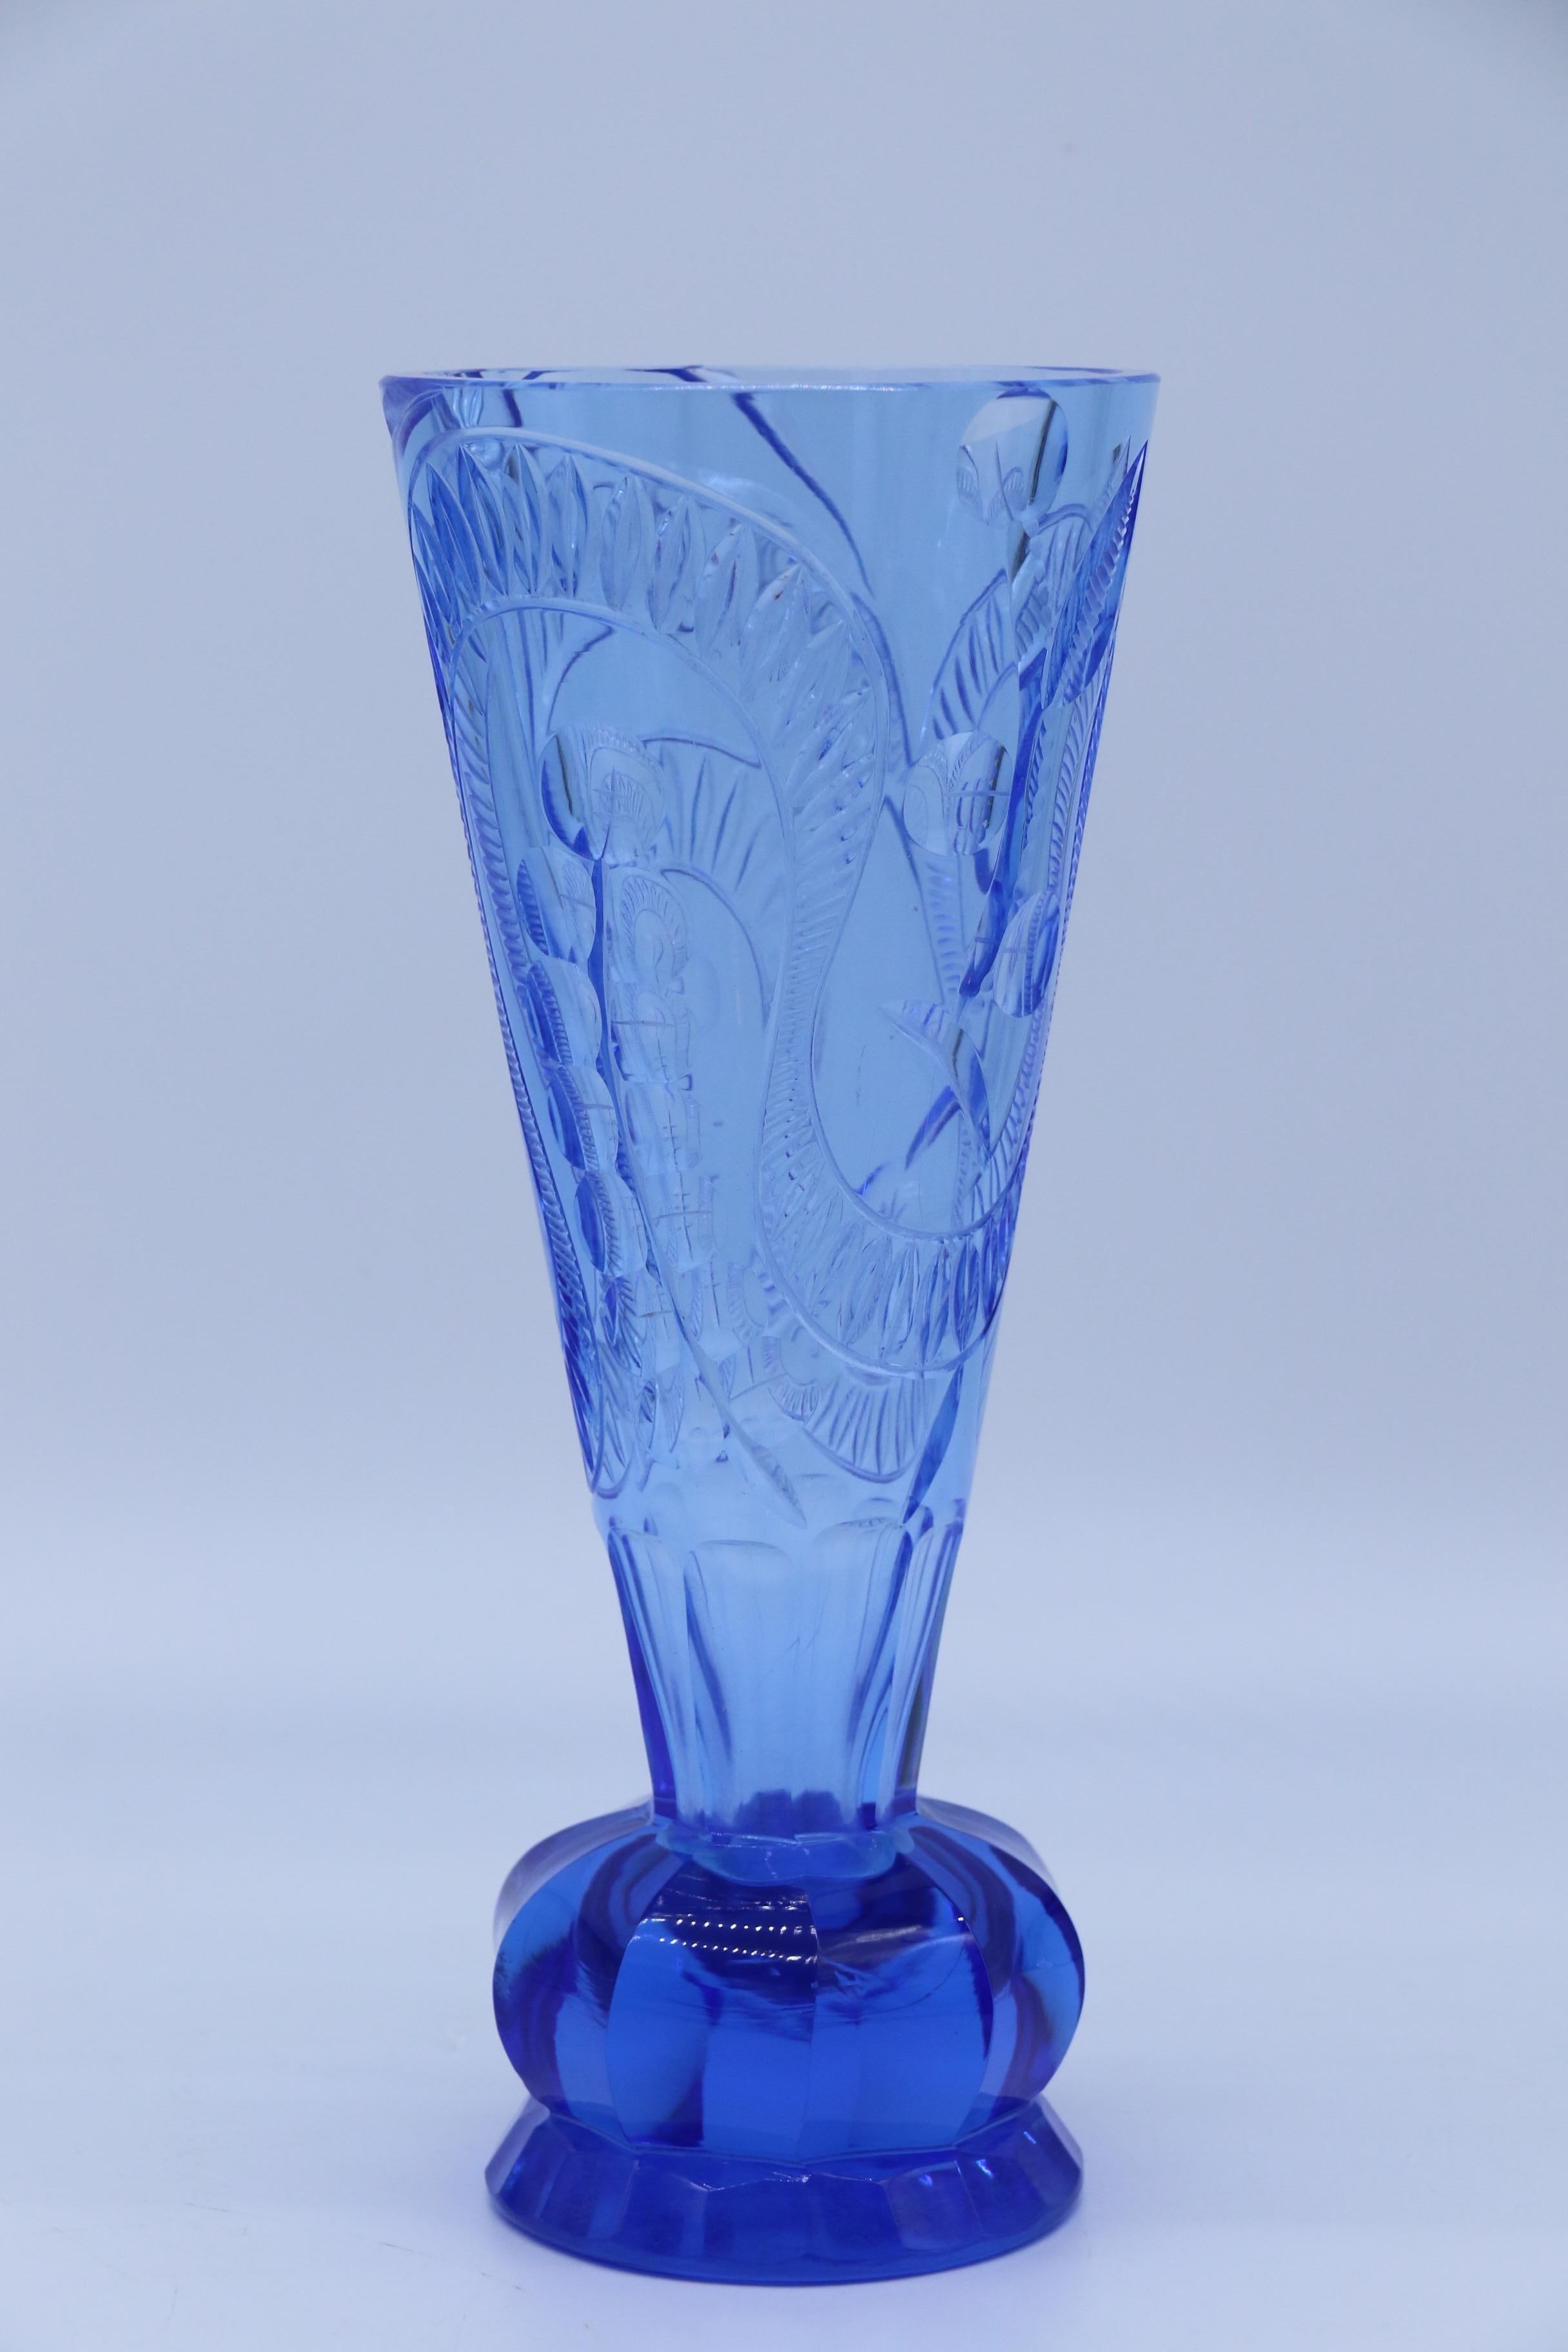 Ce vase remarquable date d'environ 1930.  Il possède un pied circulaire facetté et surmonte une lourde base en verre massif avec dix côtés festonnés autour de sa circonférence. Le vase de forme conique s'élève élégamment jusqu'au bord et est décoré